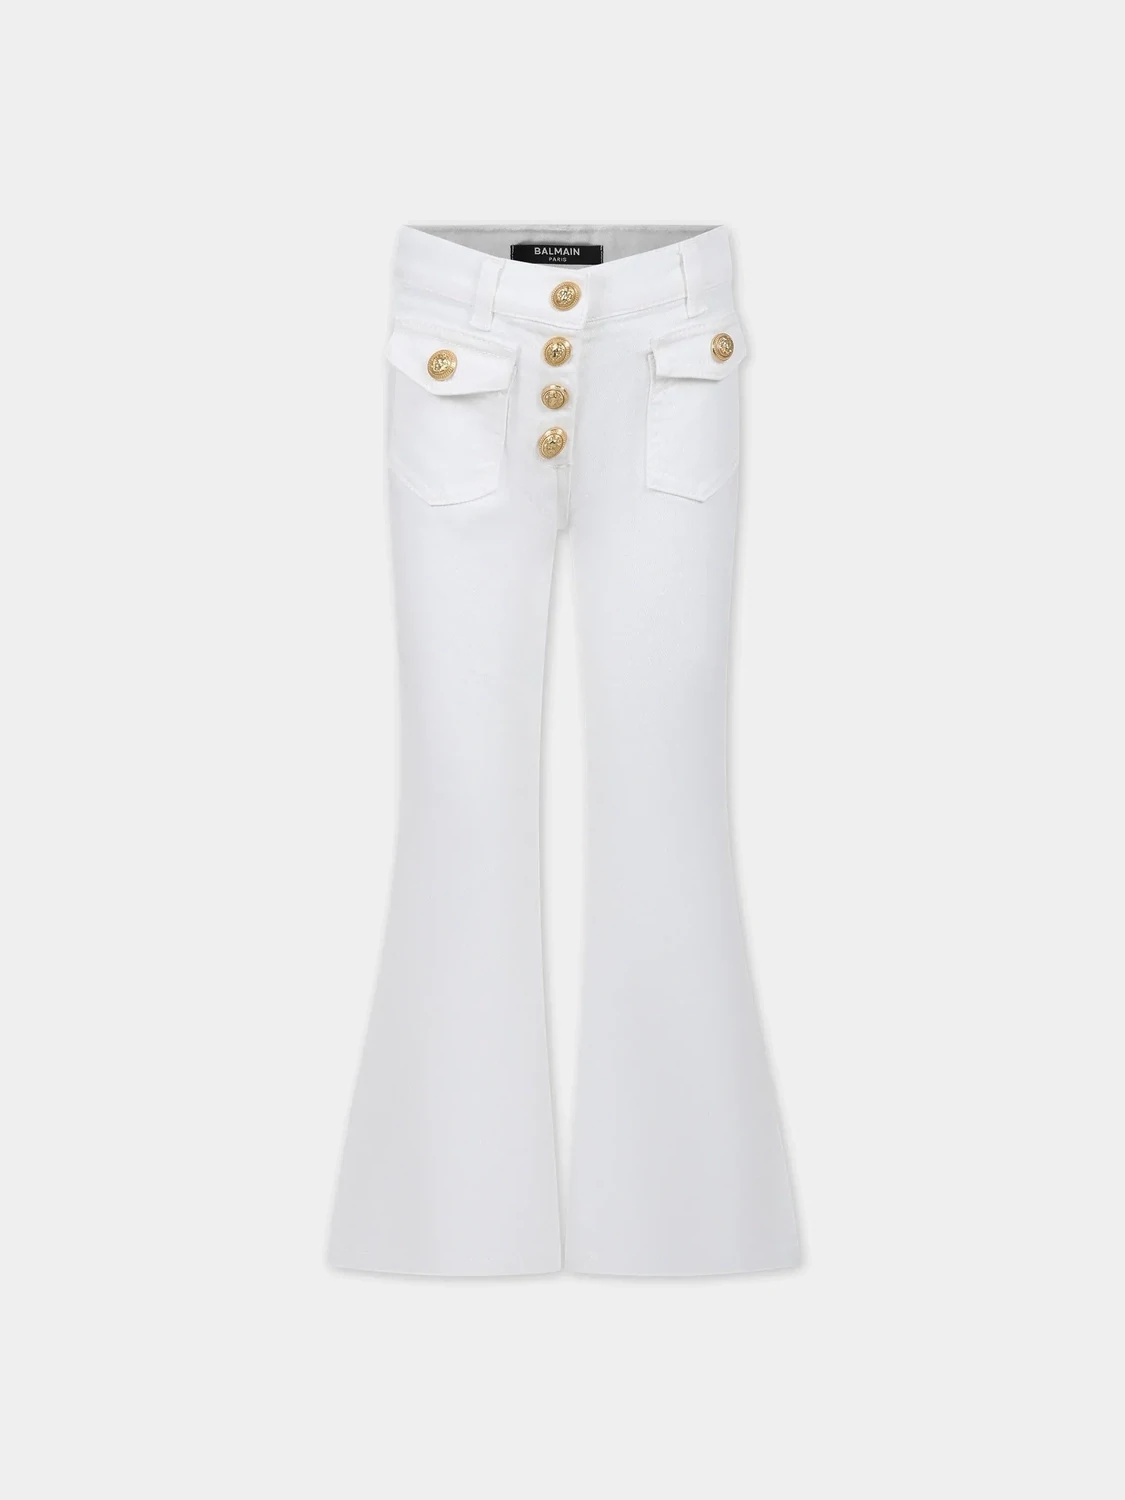 Balmain - Jeans bianco a zampa bottoni oro, Size: 14 anni